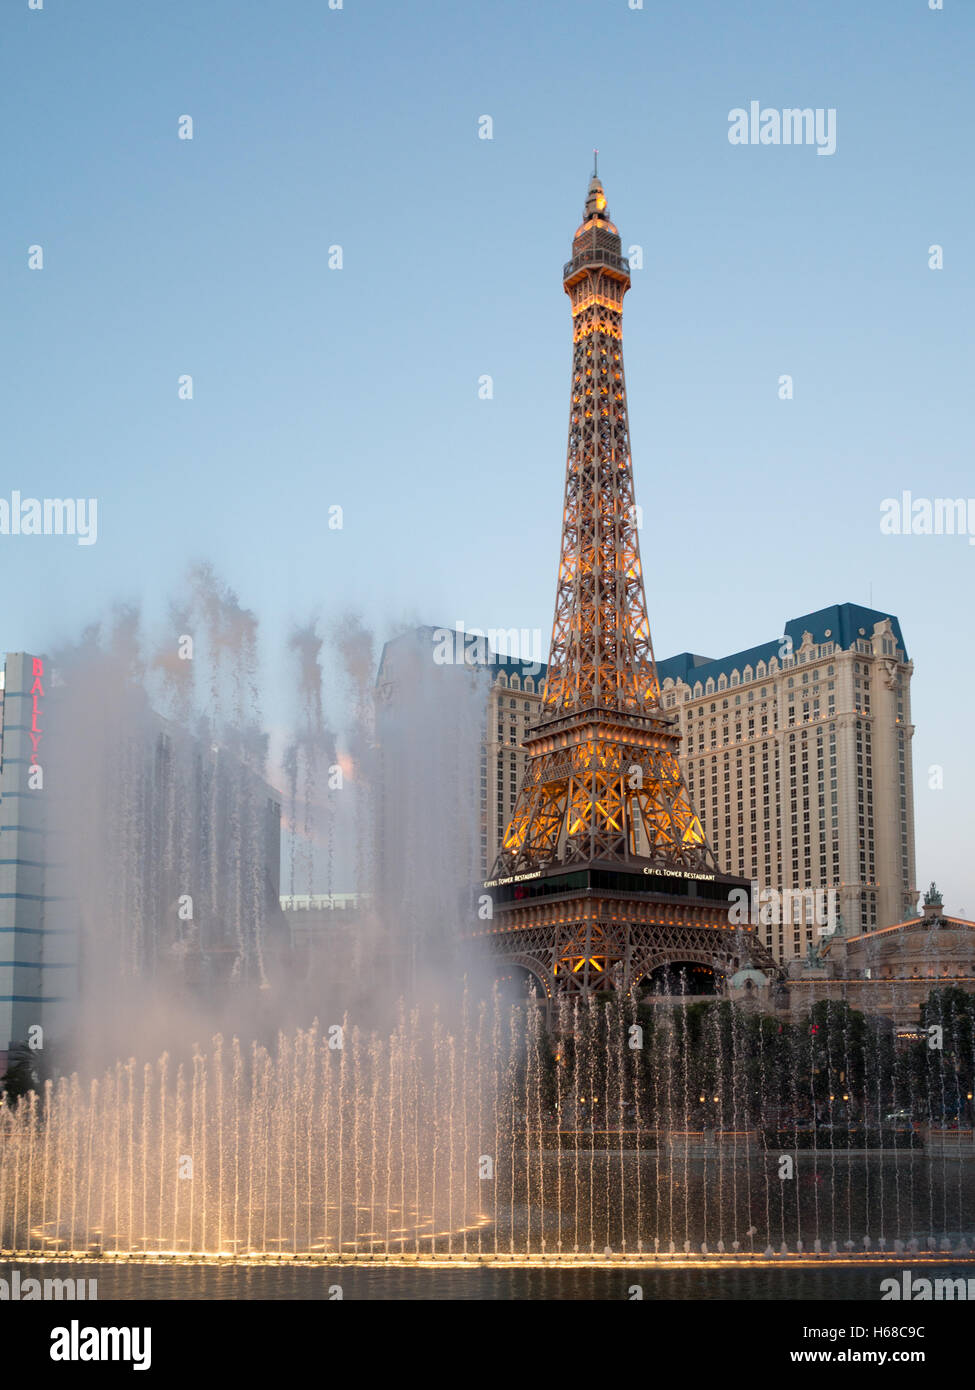 Bellagio Hotel and Casino fontane spettacolo di luci con il Paris Las Vegas Torre Eiffel in background Foto Stock